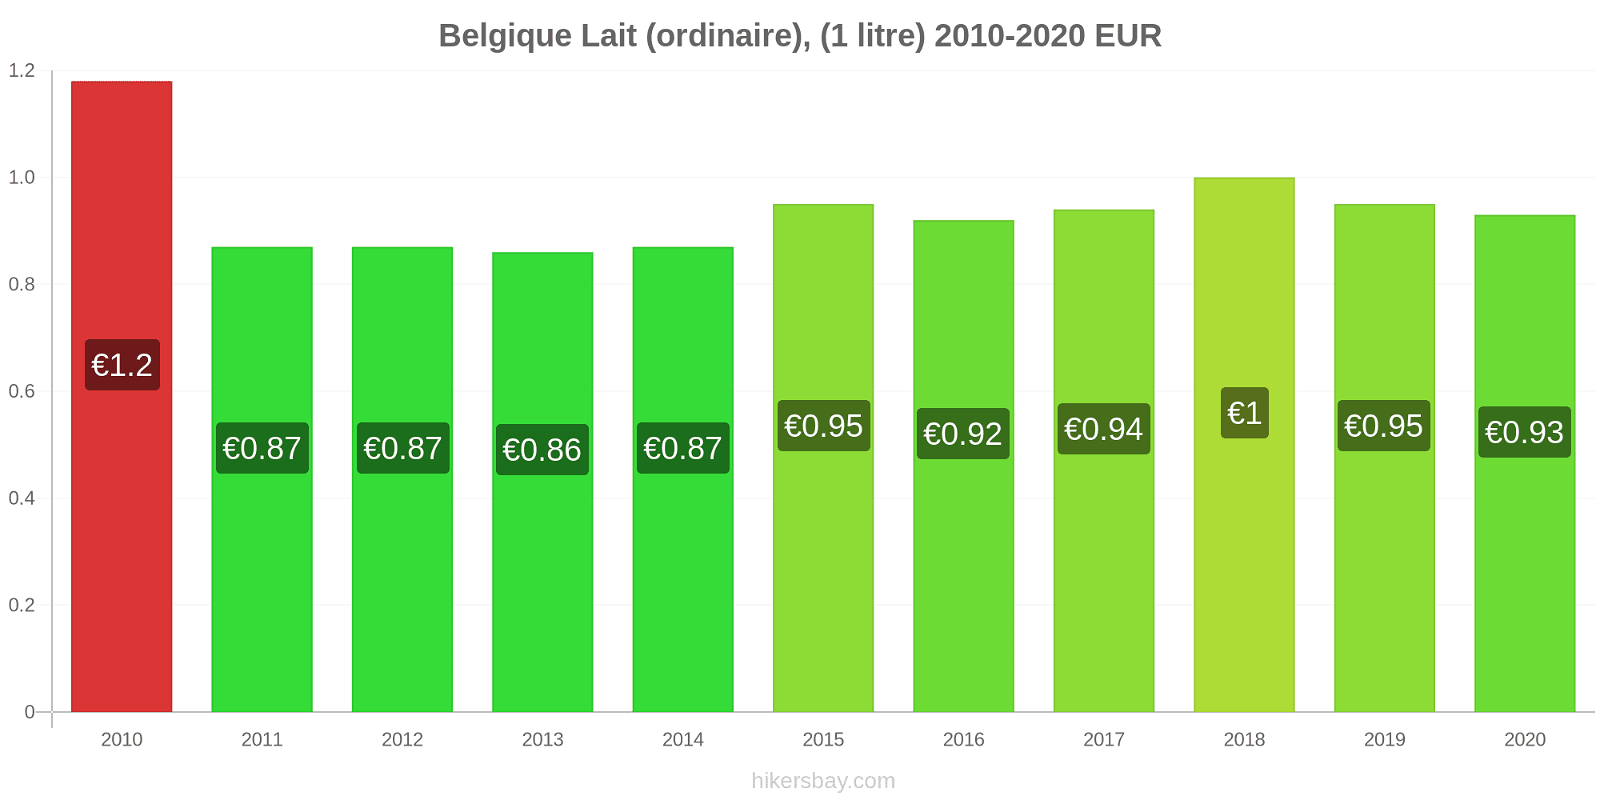 Belgique changements de prix (Régulier), lait (1 litre) hikersbay.com